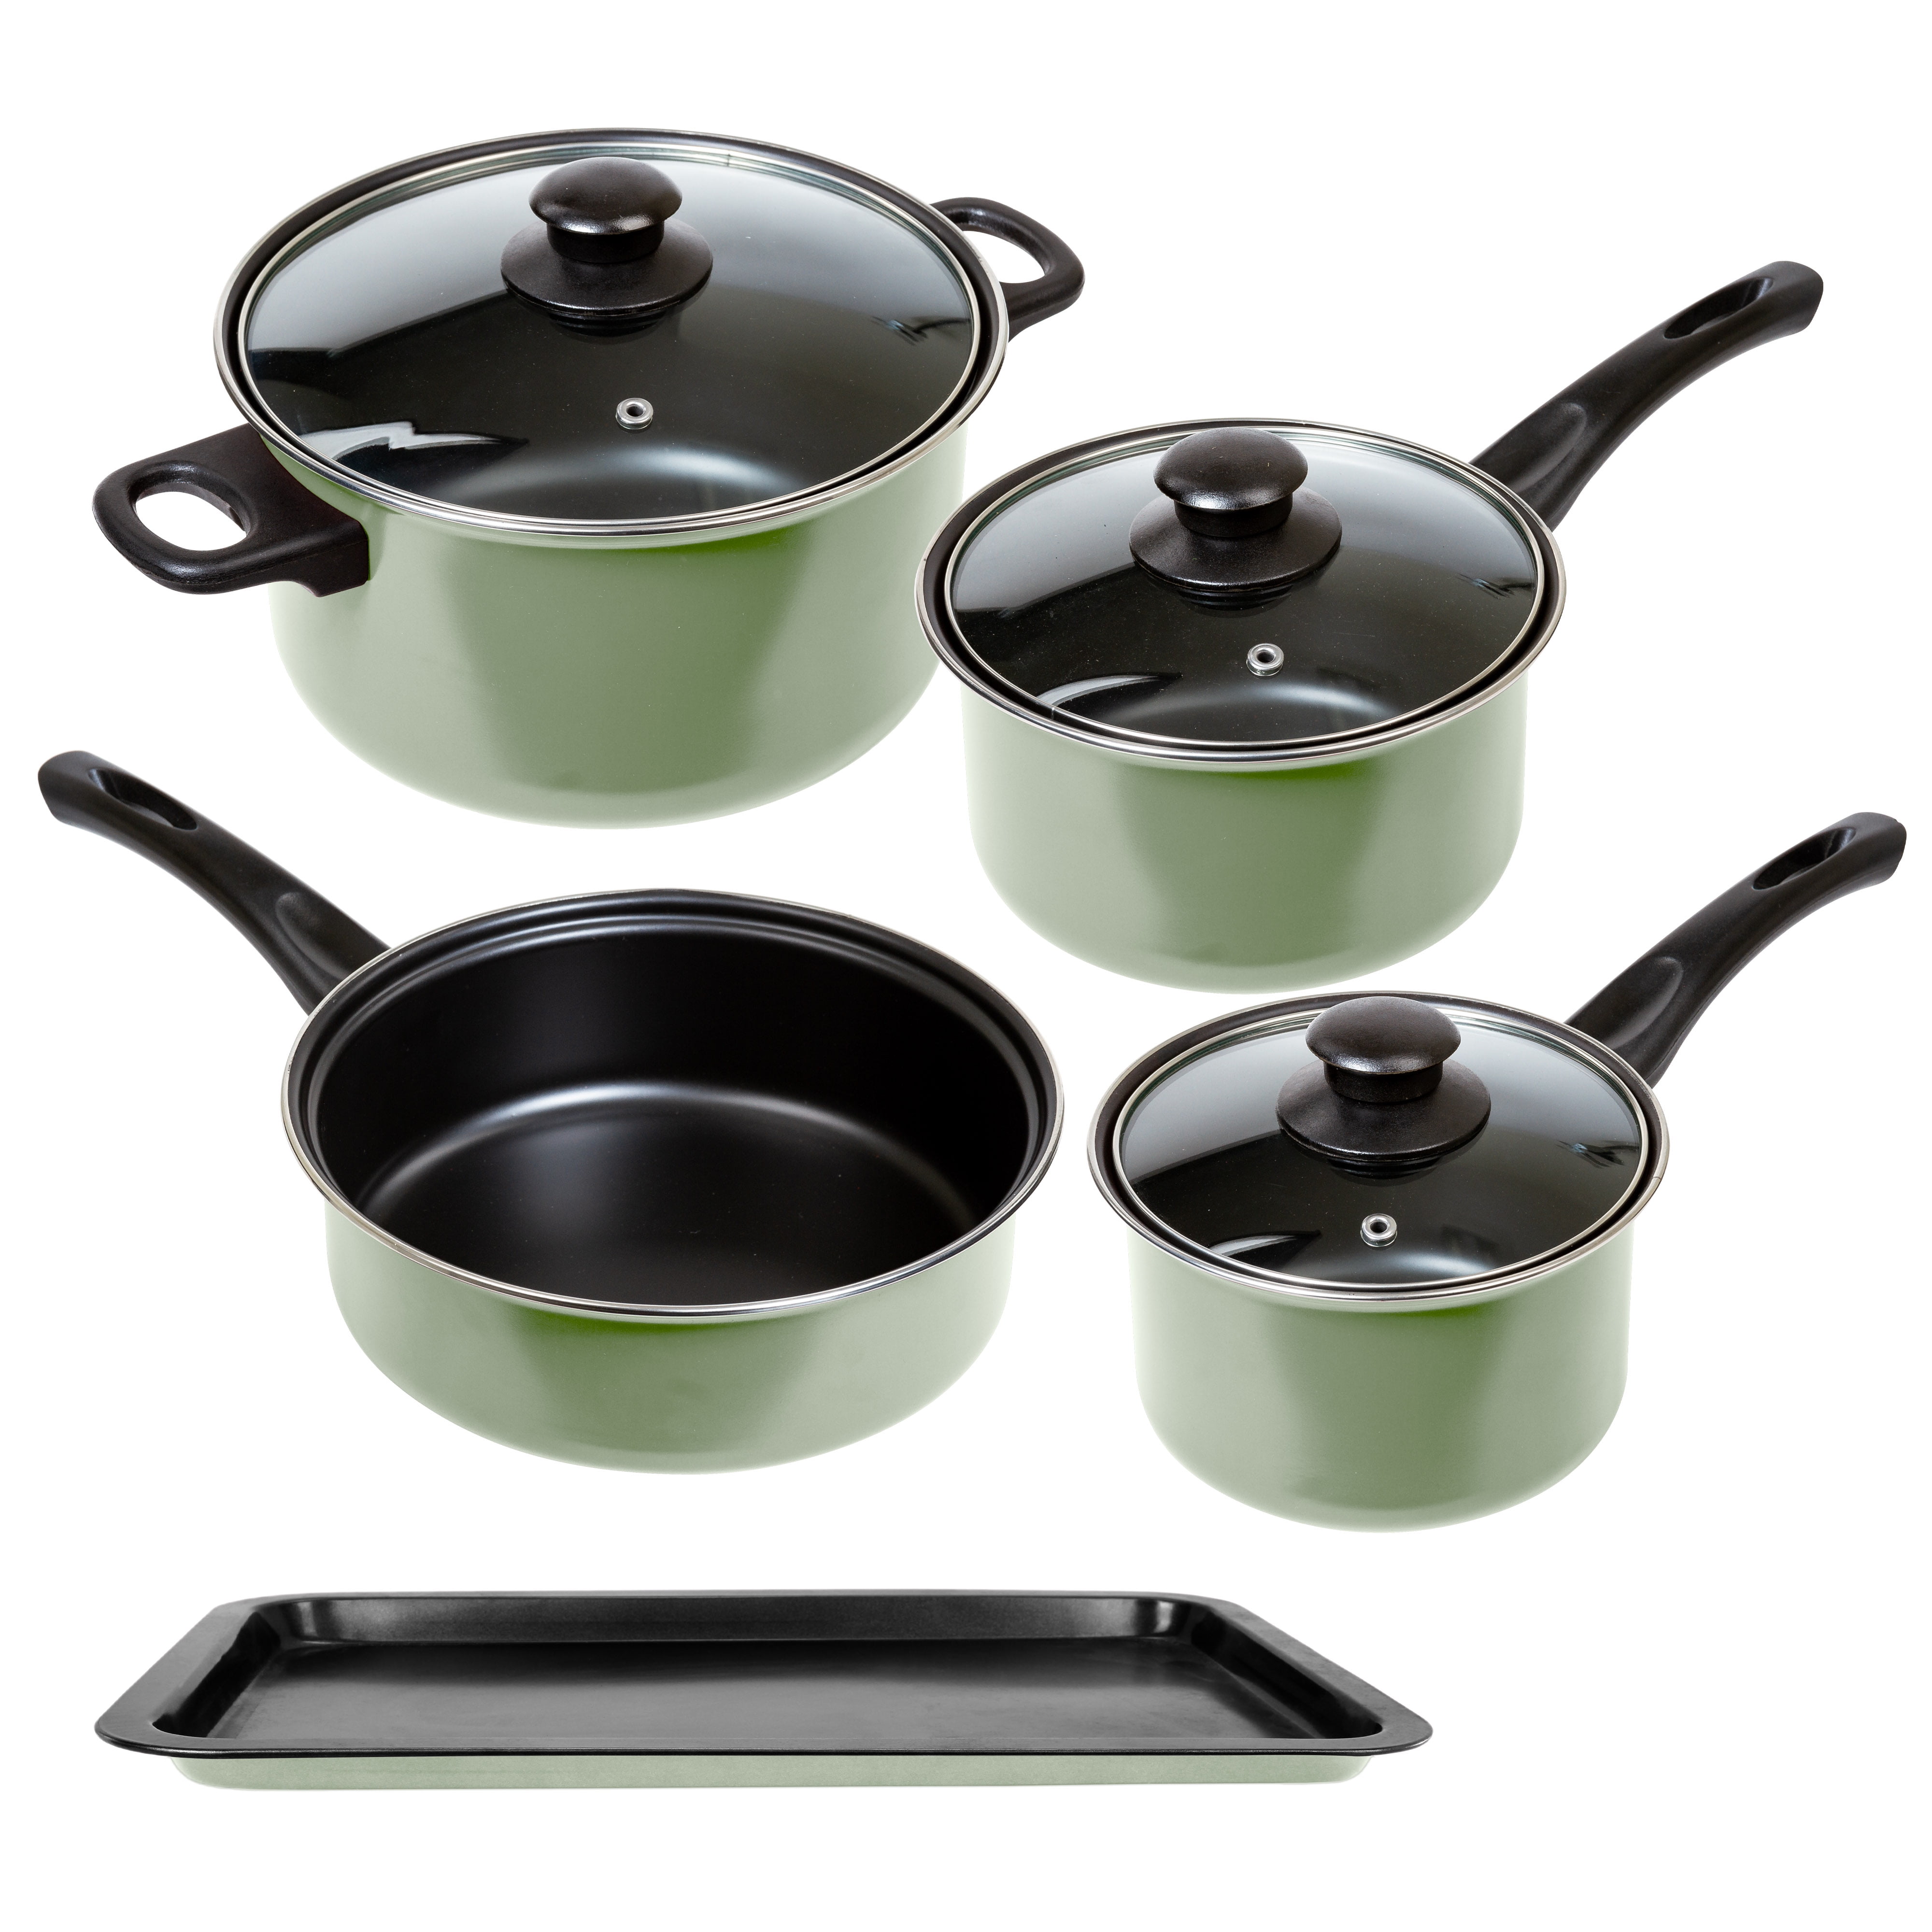 Lexi Home 8 Pc Nonstick Carbon Steel Cookware Set - Light Green